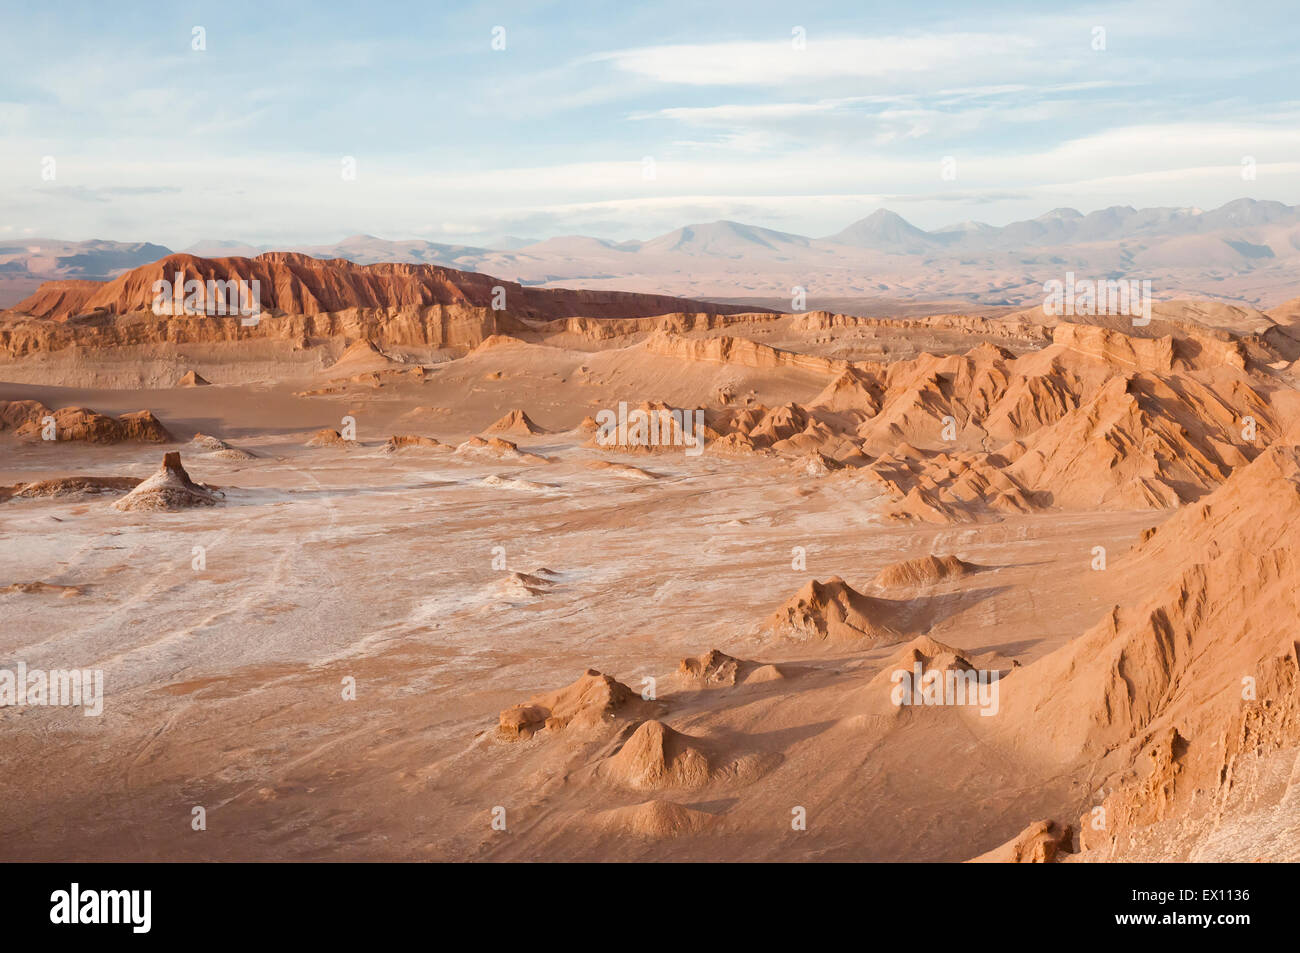 Vallée de la lune - désert d'Atacama - Chili Banque D'Images